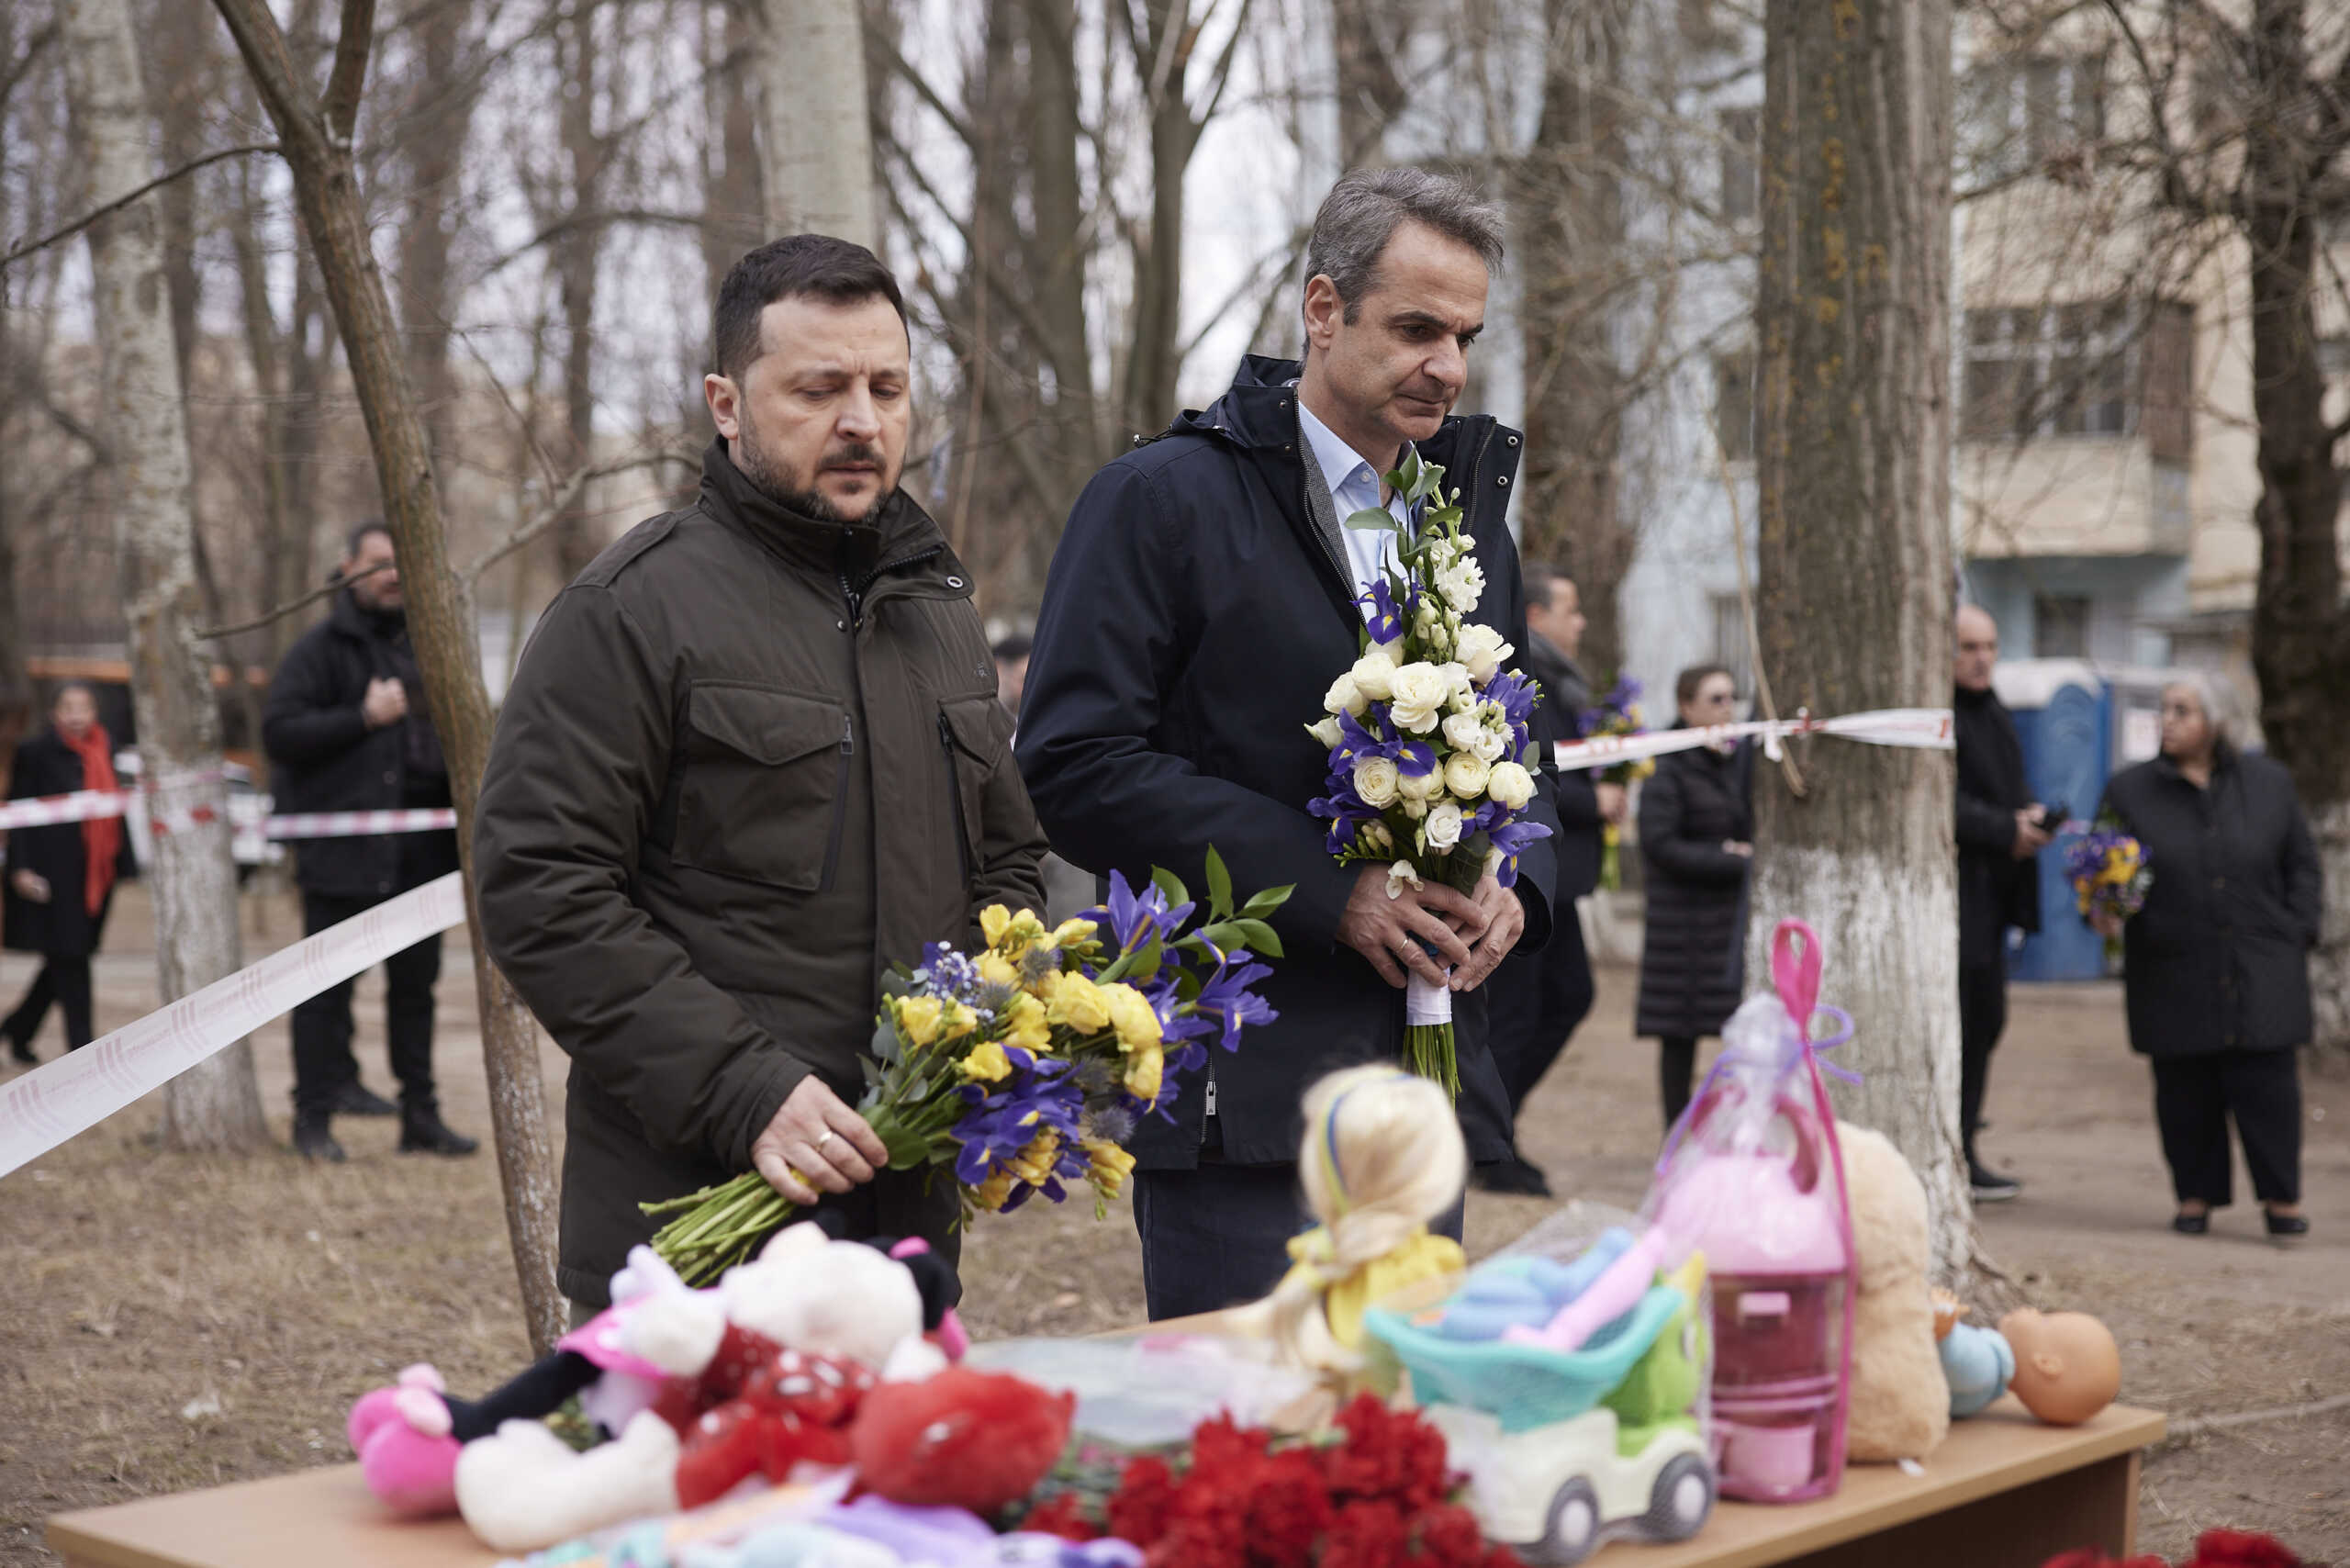 Επίσκεψη Μητσοτάκη στην Ουκρανία: Λύγισε ο πρωθυπουργός στην πολυκατοικία που έχασαν την ζωή τους 12 άμαχοι